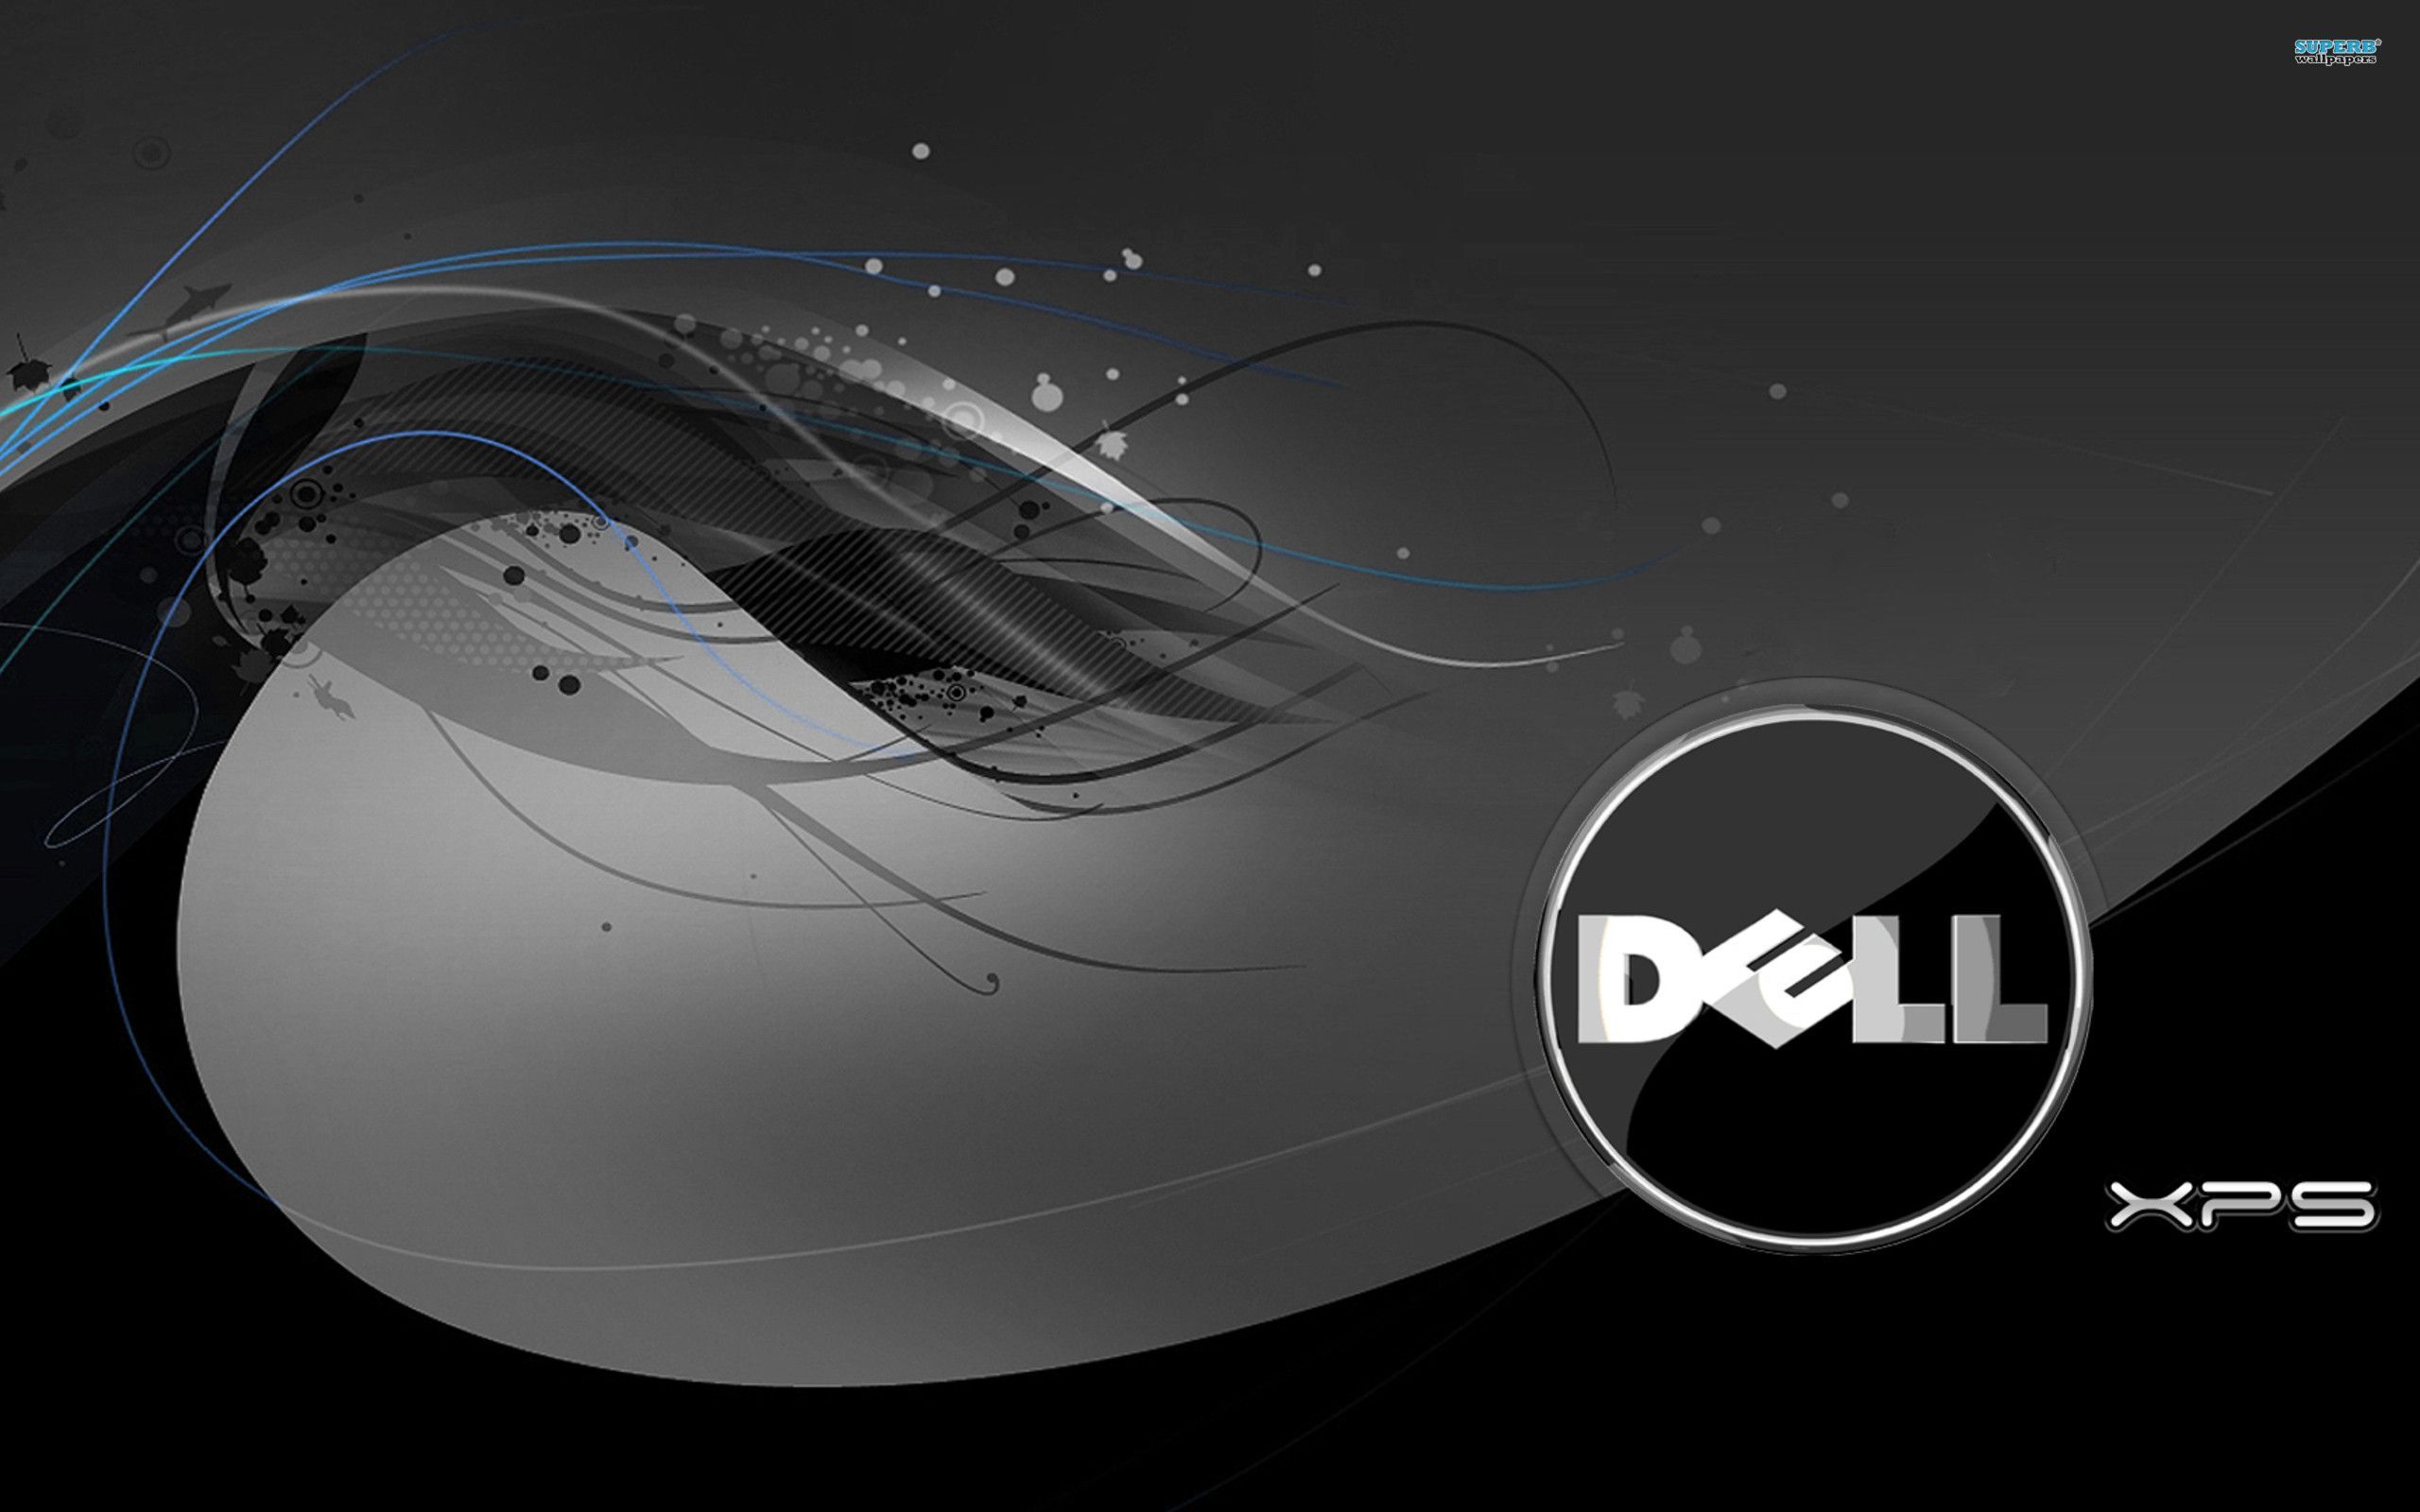 Dell Desktop Wallpaper: Nếu bạn đang tìm kiếm một bức hình nền độc đáo và đẹp mắt cho máy tính, Dell Desktop Wallpaper chắc chắn sẽ làm bạn mê mẩn. Thiết kế tinh tế, màu sắc tươi sáng và độ phân giải cao đảm bảo rằng bạn sẽ có một trải nghiệm tuyệt vời khi sử dụng máy tính. 